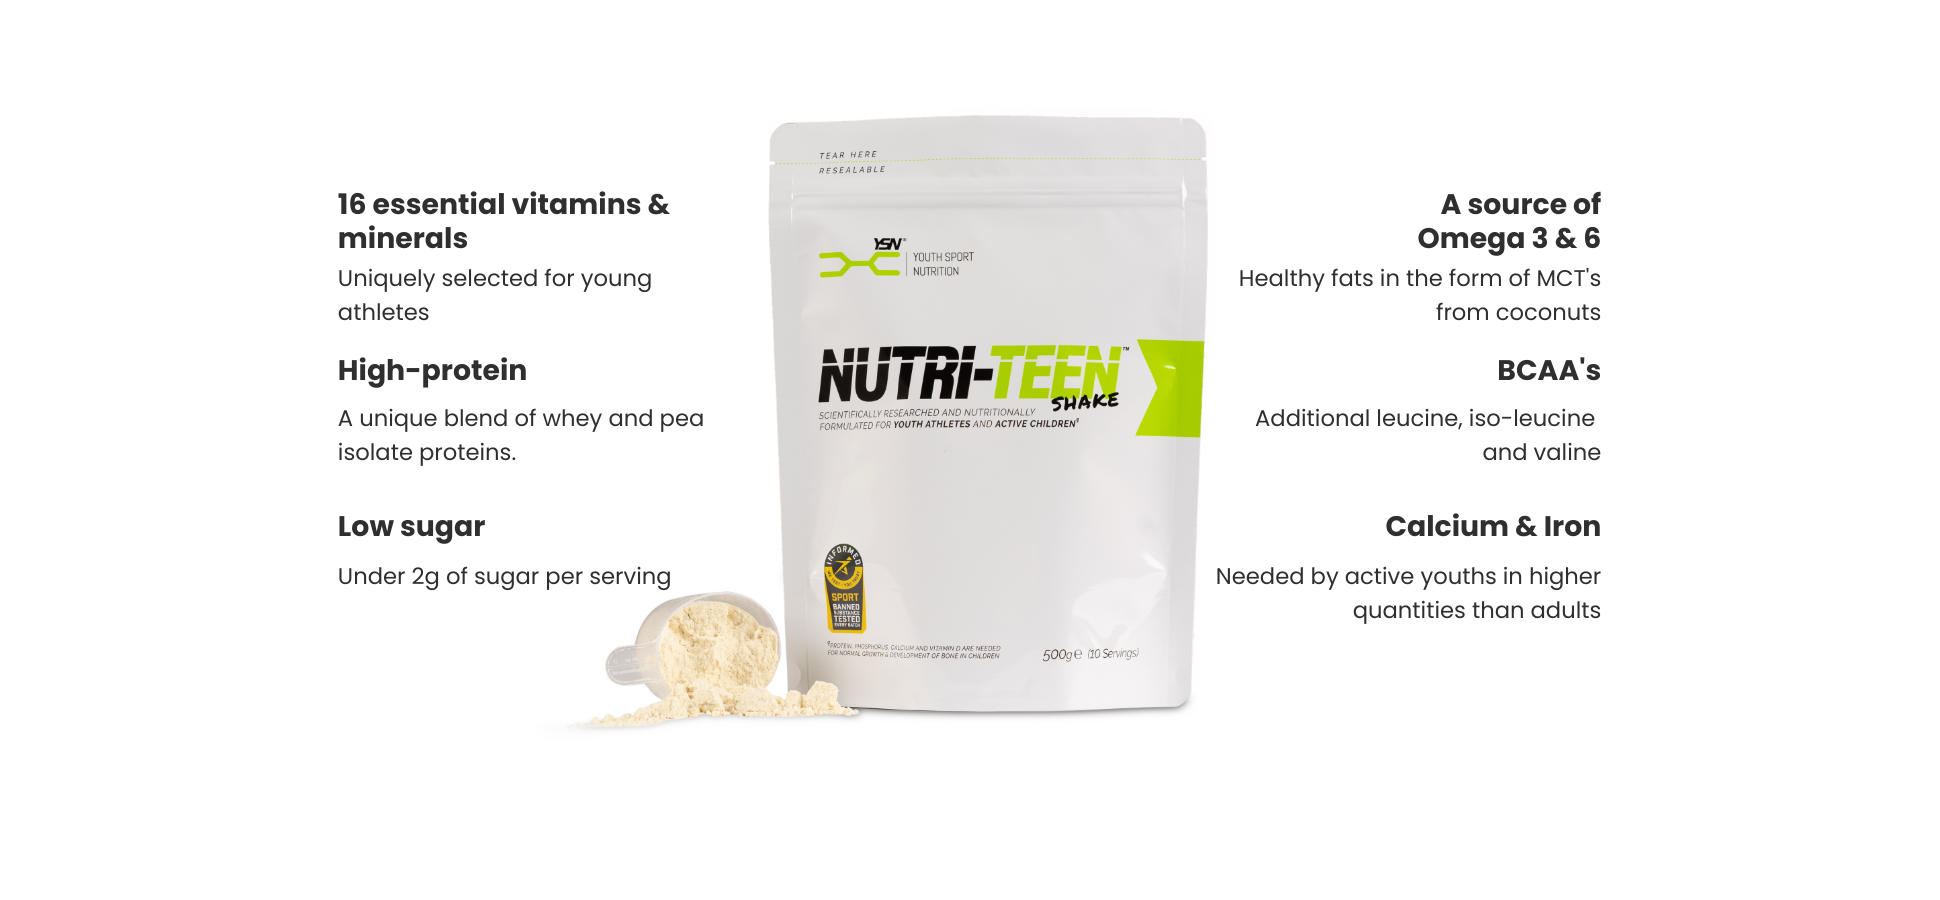 The key ingredients of NUTRI-TEEN Shakes